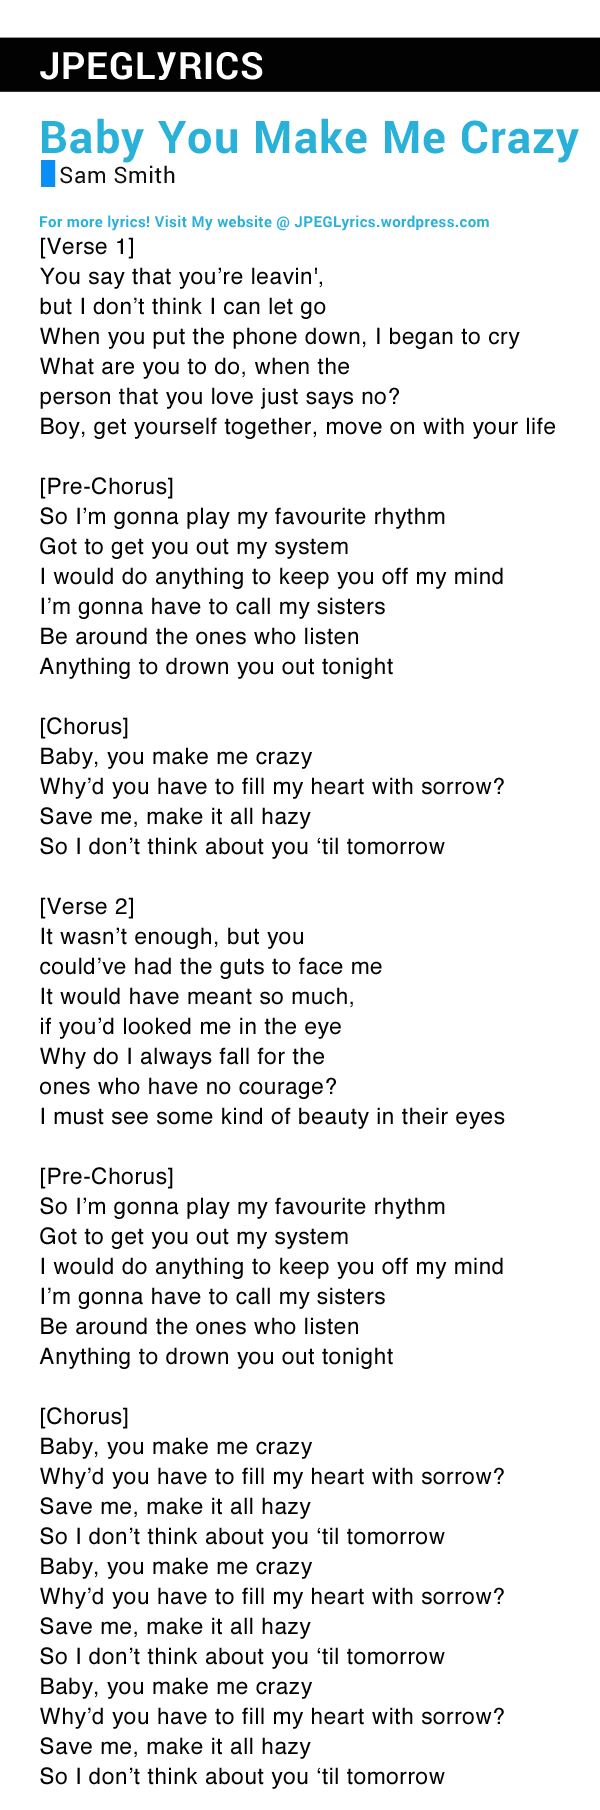 Baby, You Make Me Crazy By Sam Smith Lyrics | JPEG Lyrics